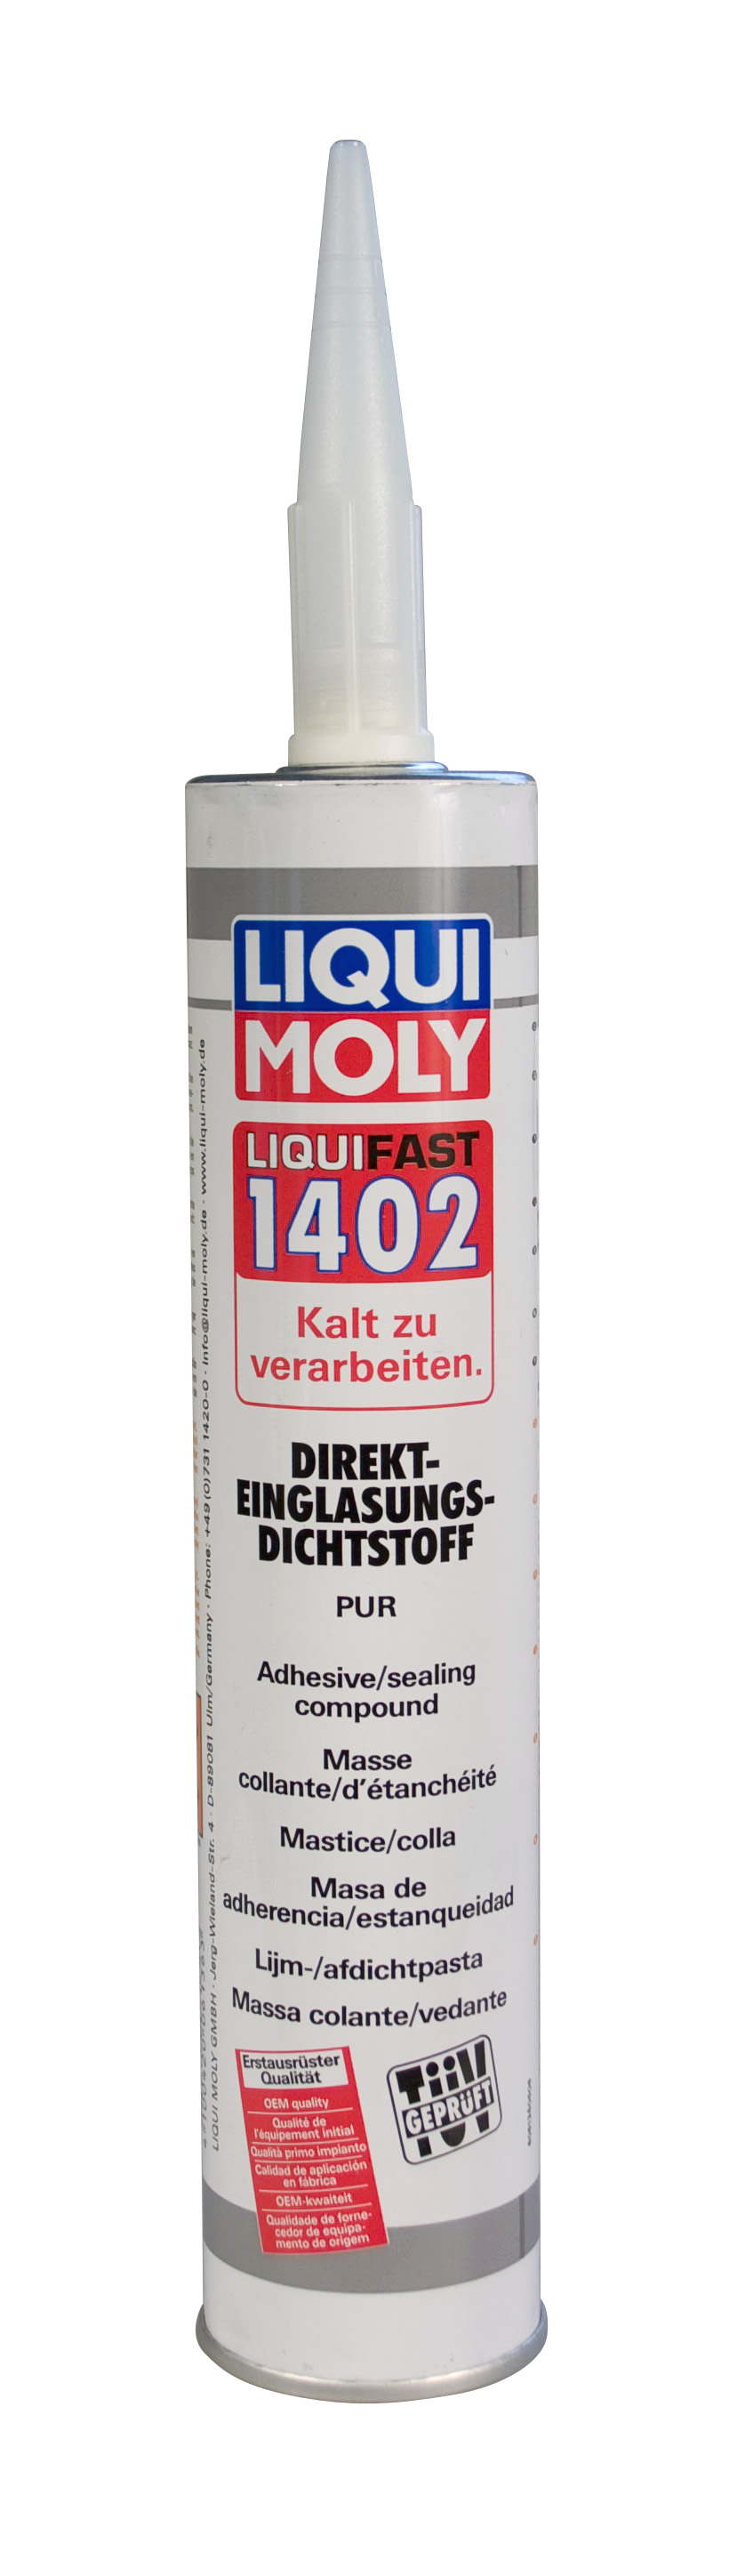 Клей среднемодульный для стекла Liquifast 1402, 310мл - Liqui Moly 6136